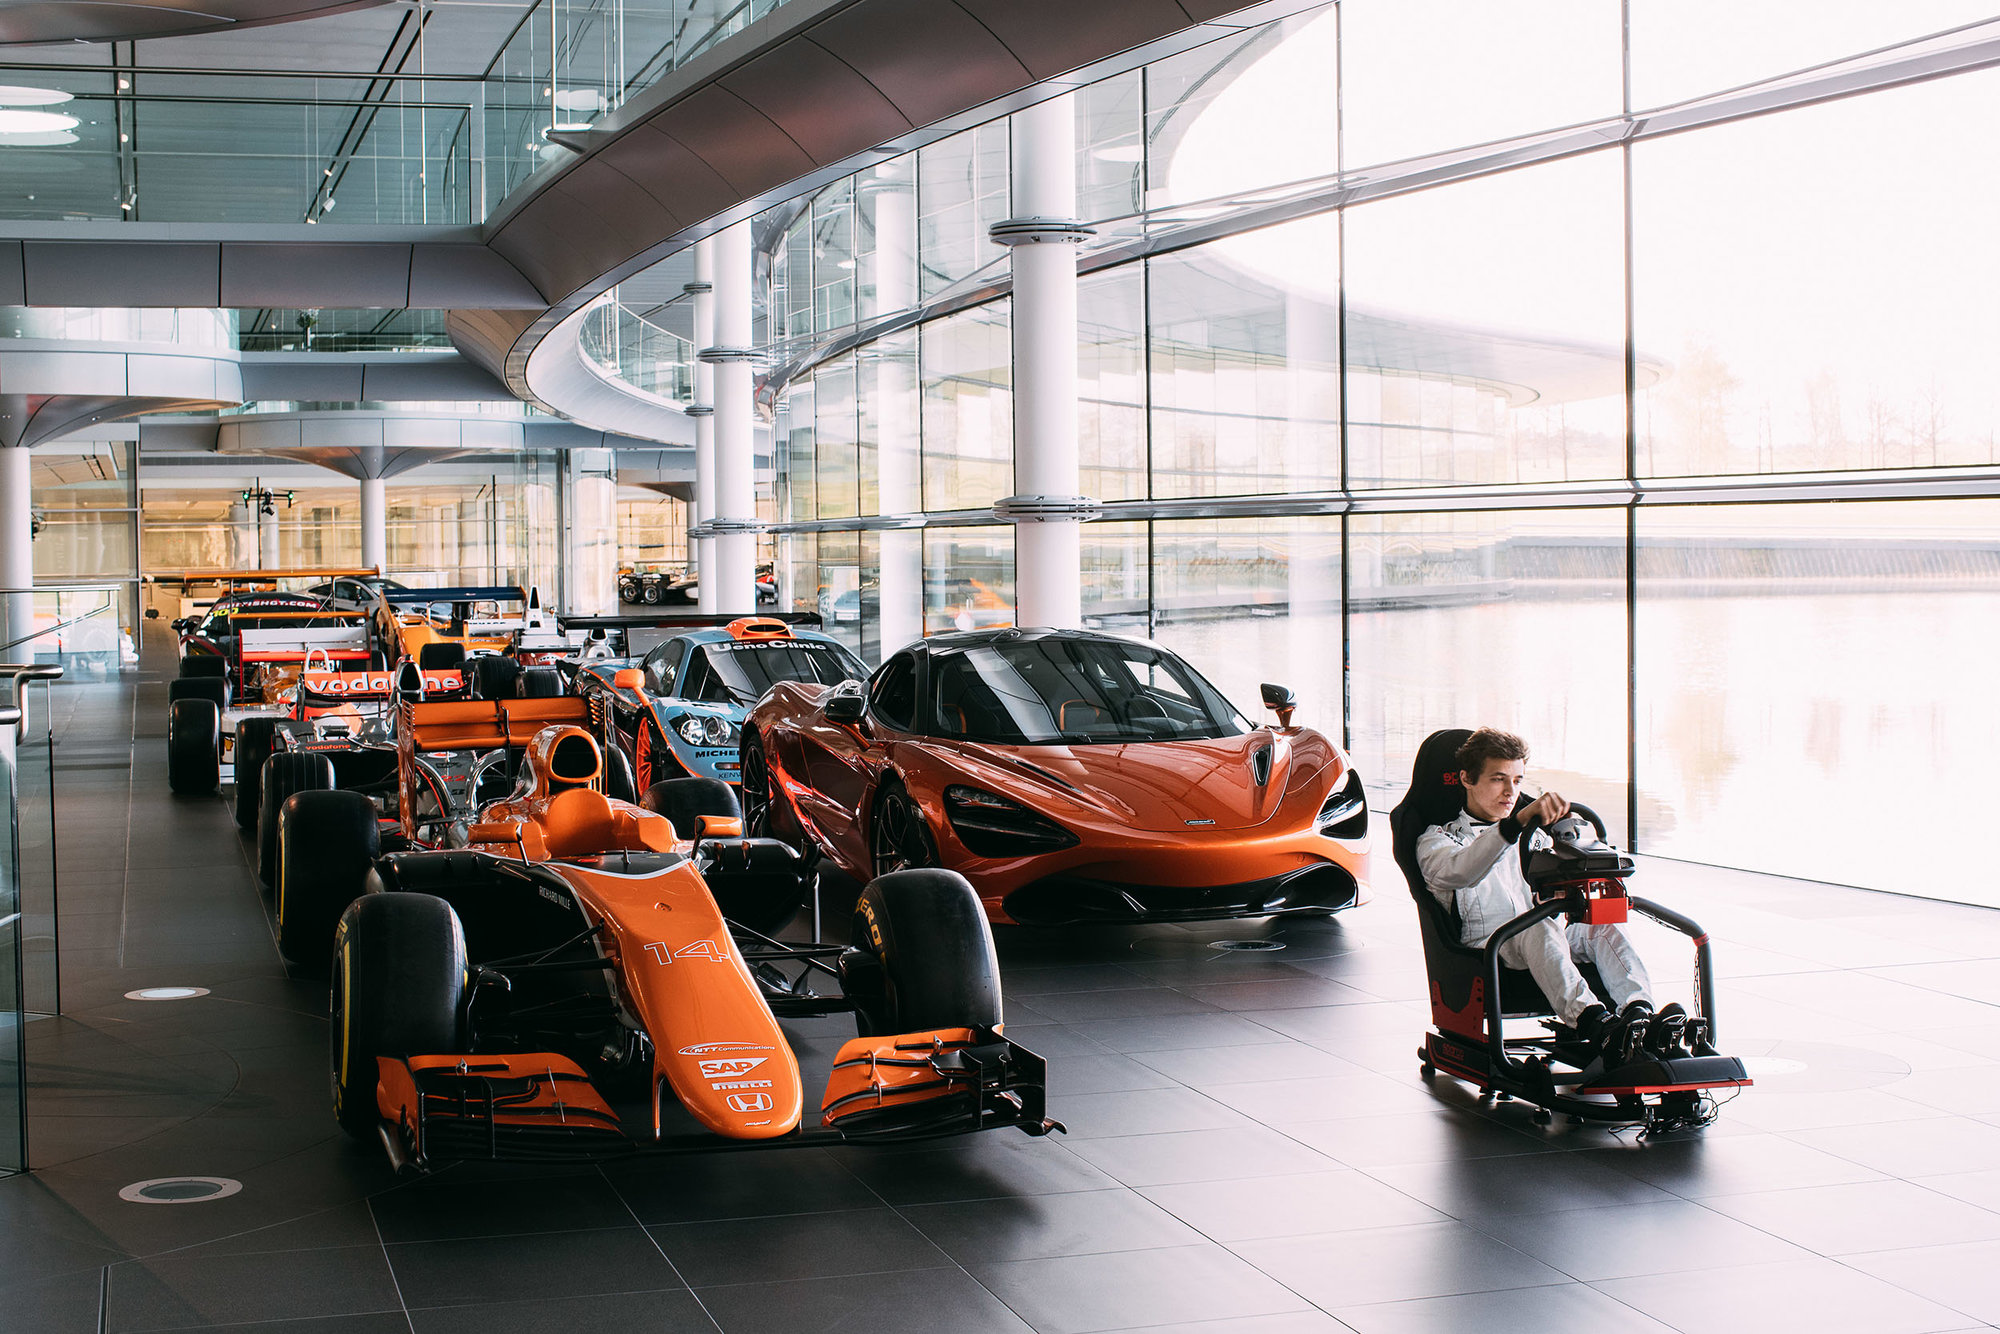 McLaren vyhlašuje soutěž na místo jezdce pro svůj simulátor